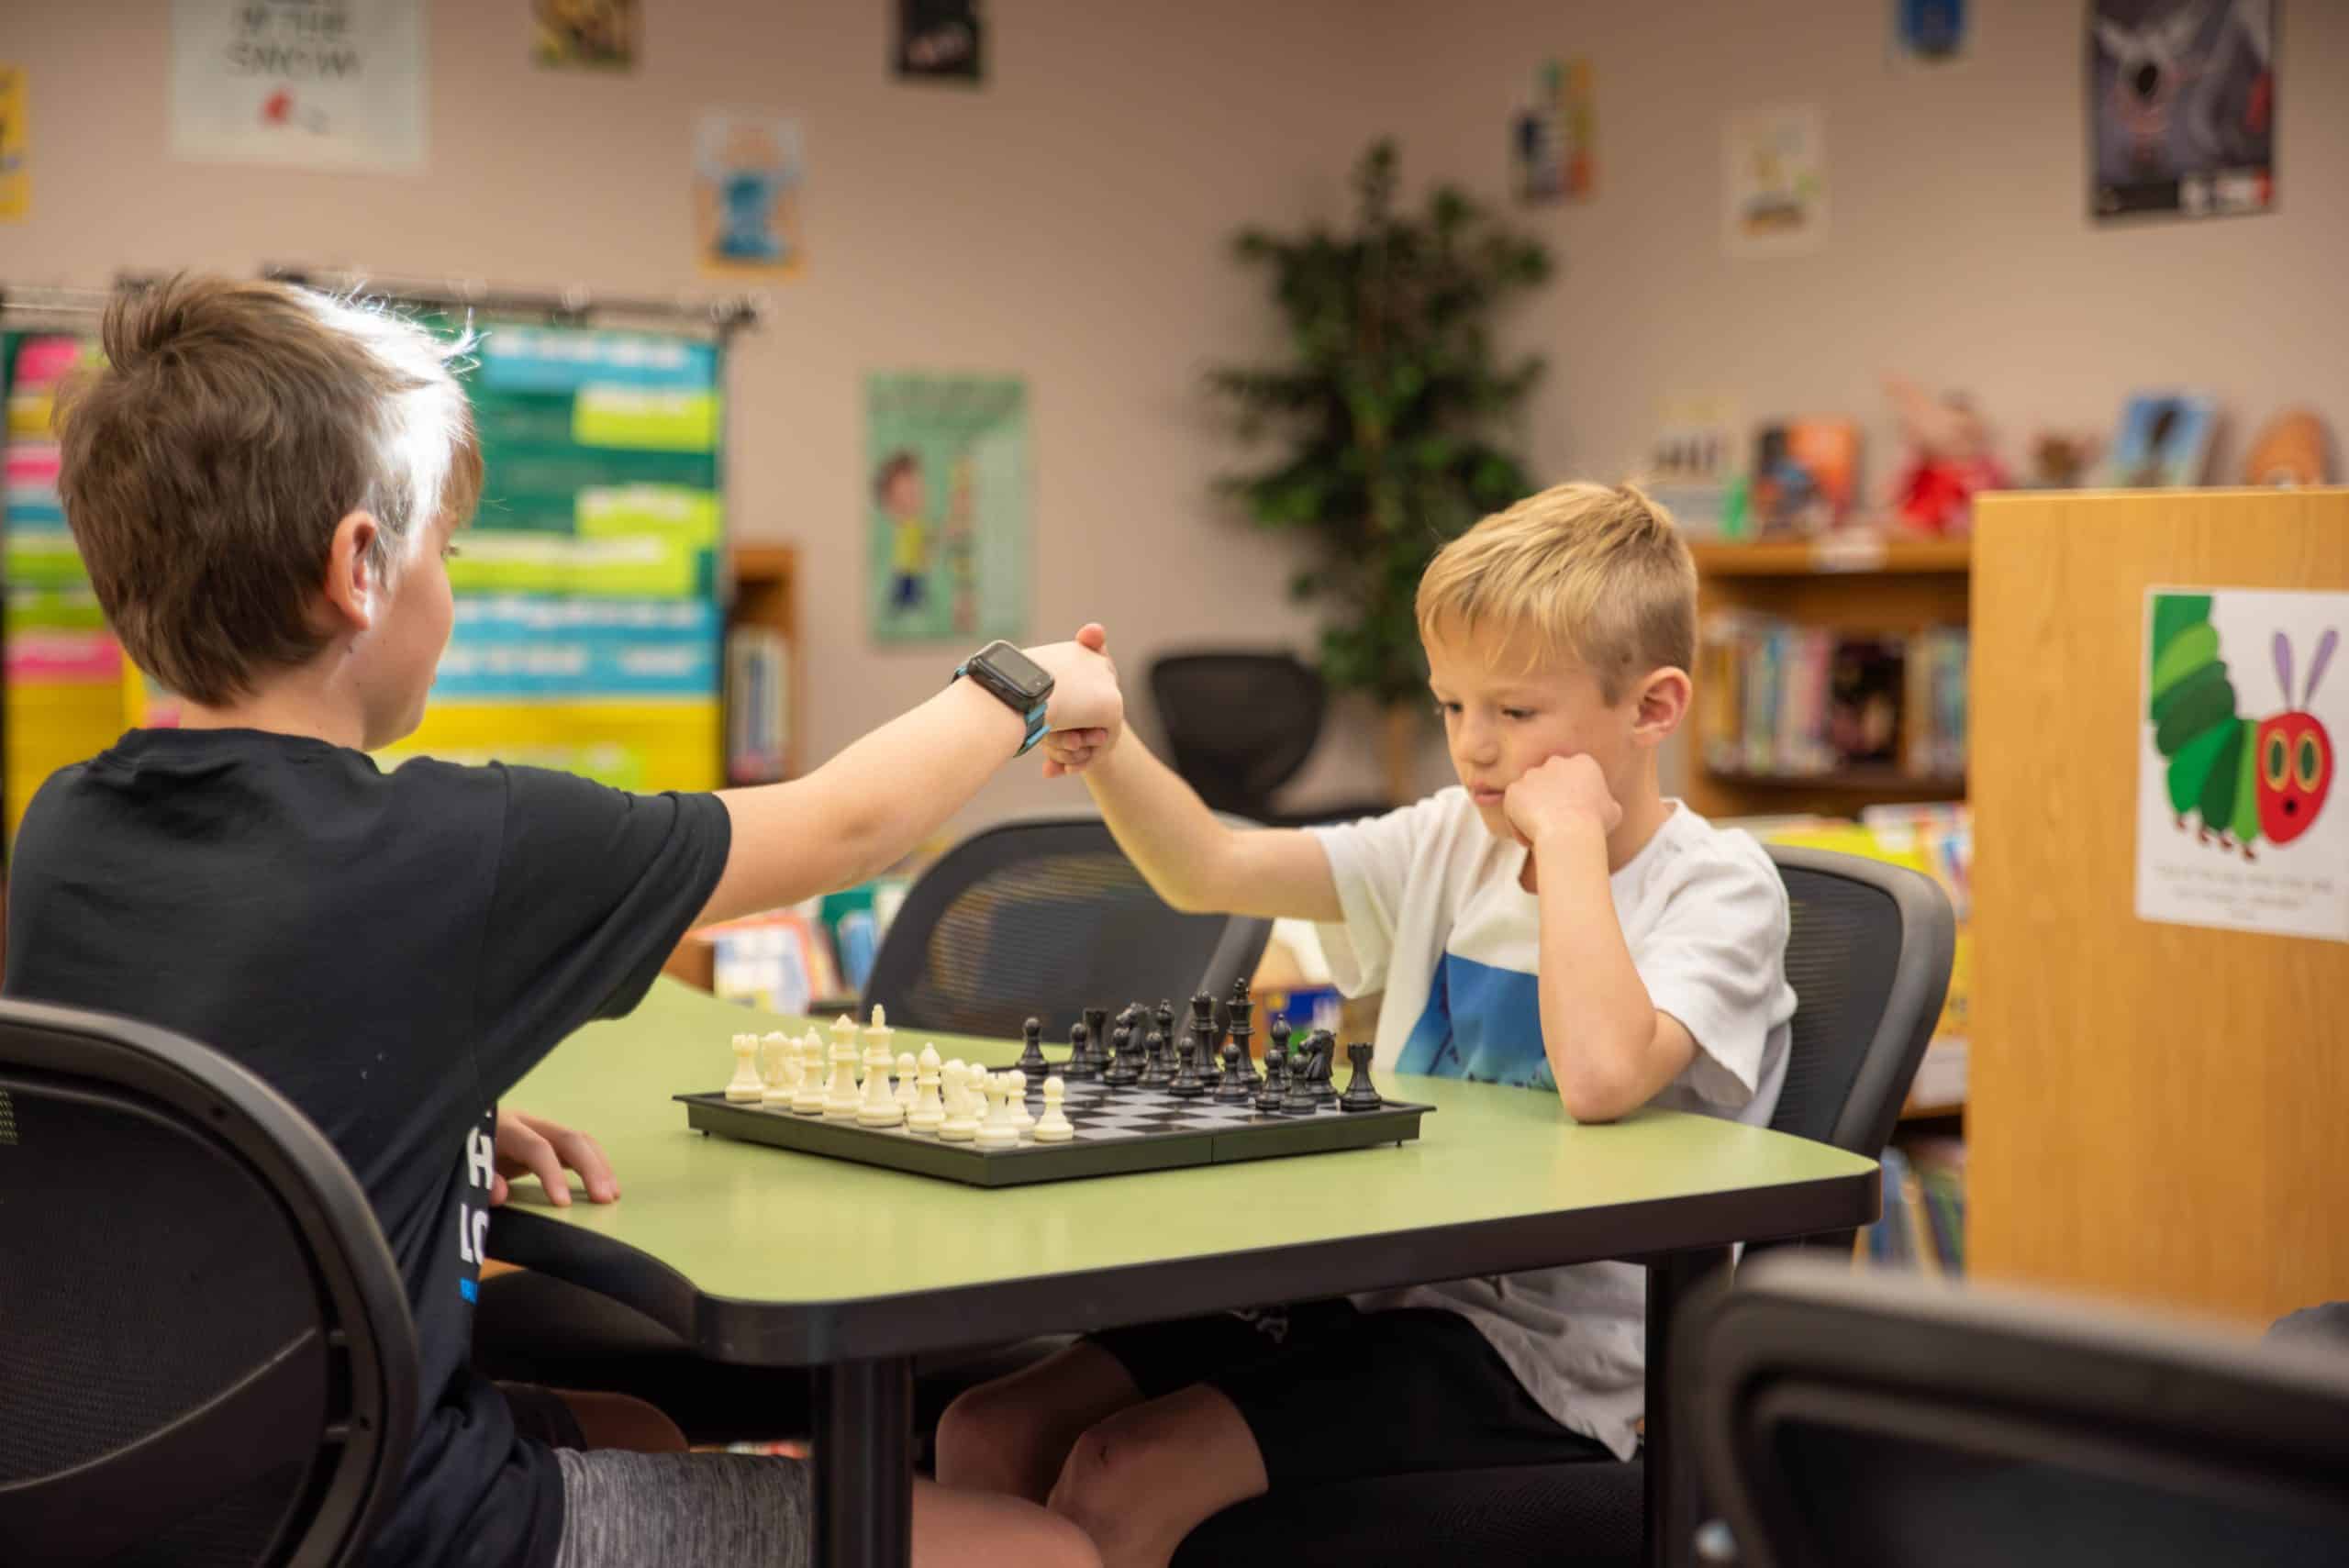 Fall River Elementary La escuela lanza un nuevo club de ajedrez